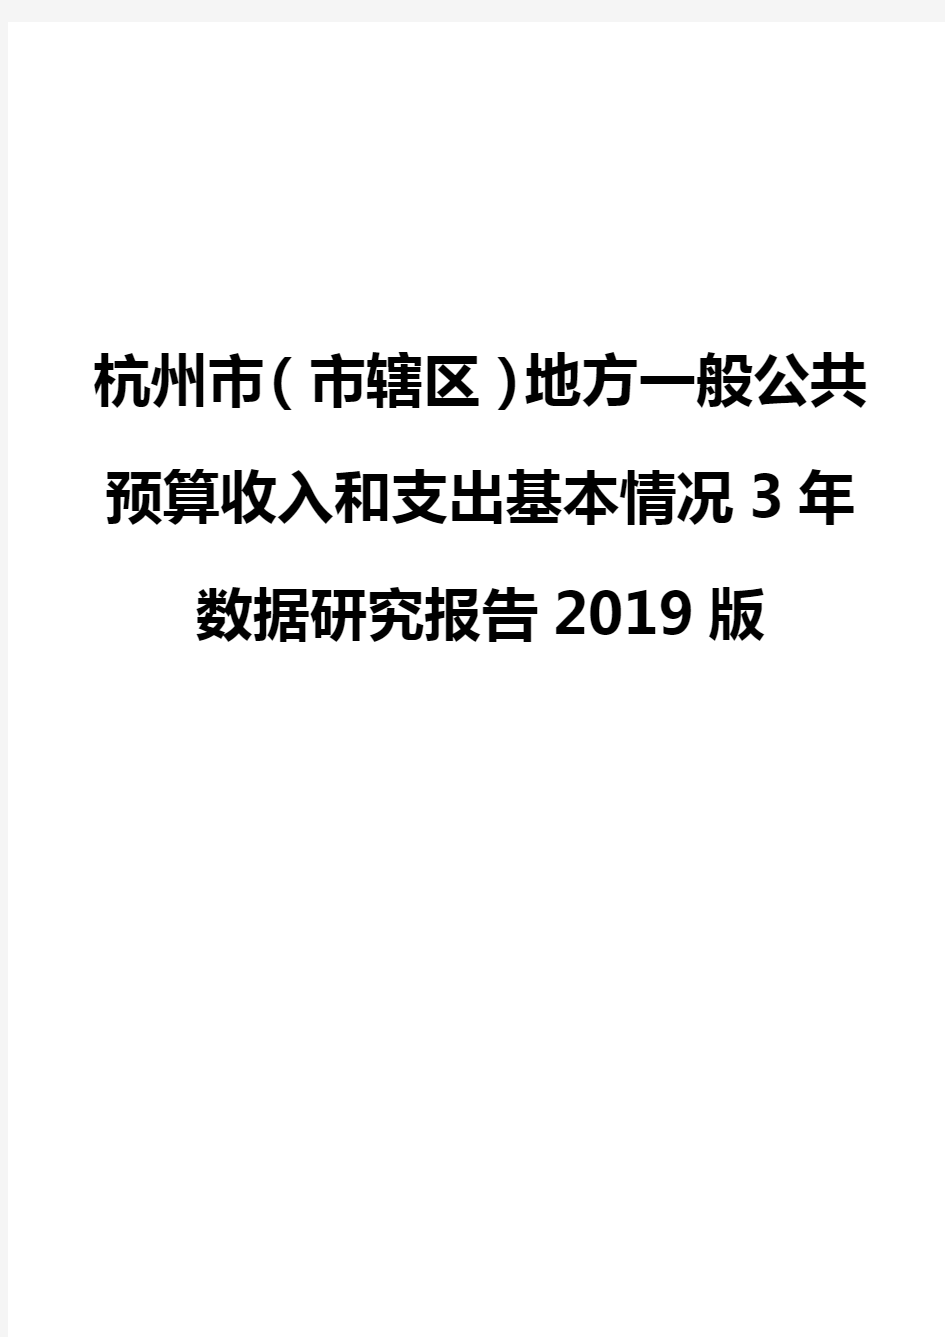 杭州市(市辖区)地方一般公共预算收入和支出基本情况3年数据研究报告2019版